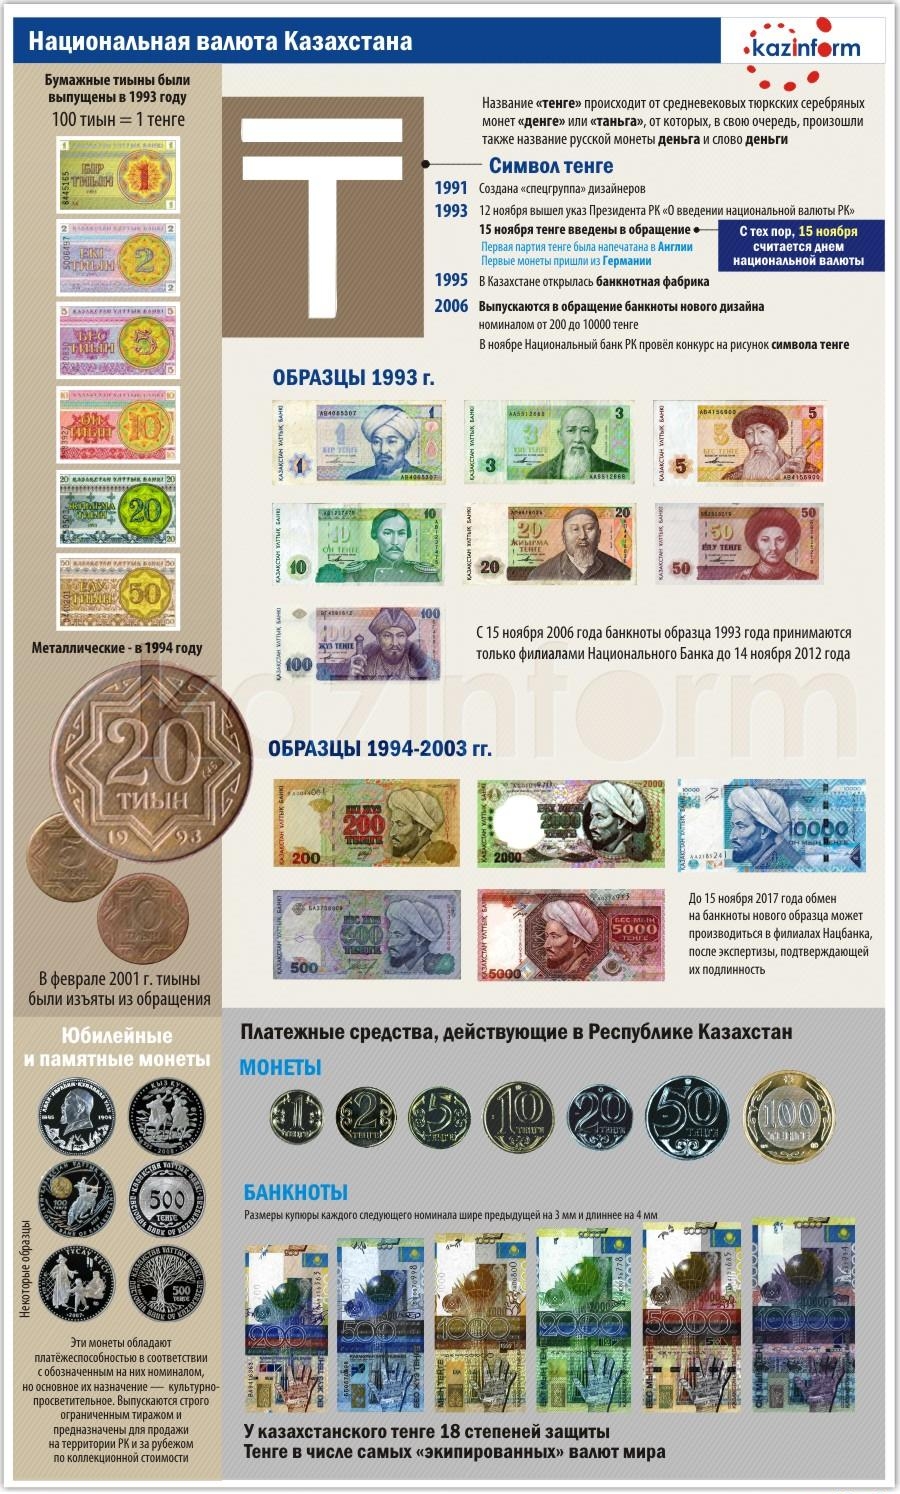 Тенге - национальная валюта Казахстана